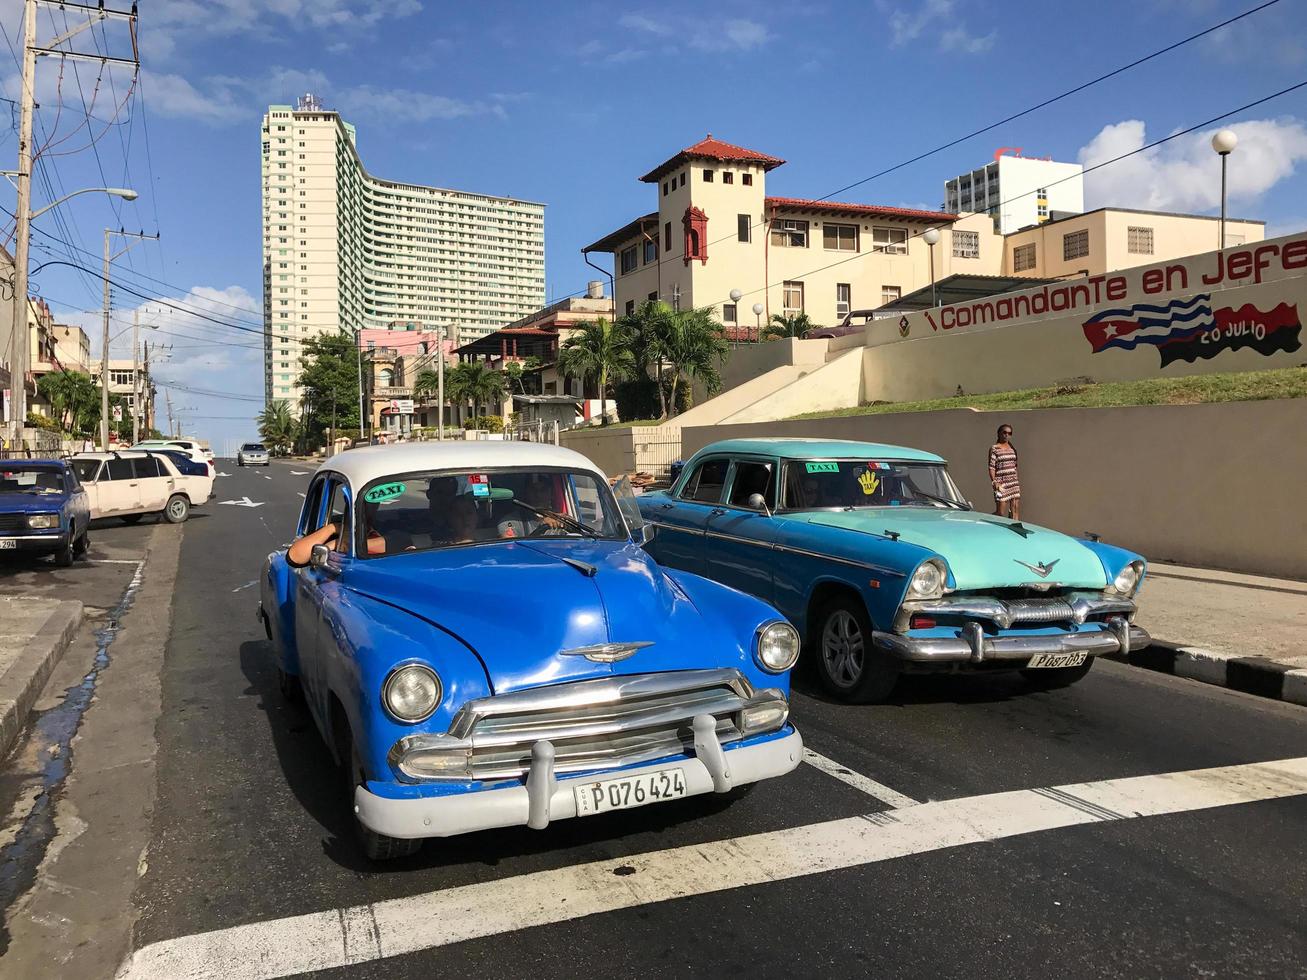 Havanna, kuba - jan 14, 2017 - klassisk bil i de gator av Havanna, kuba. foto